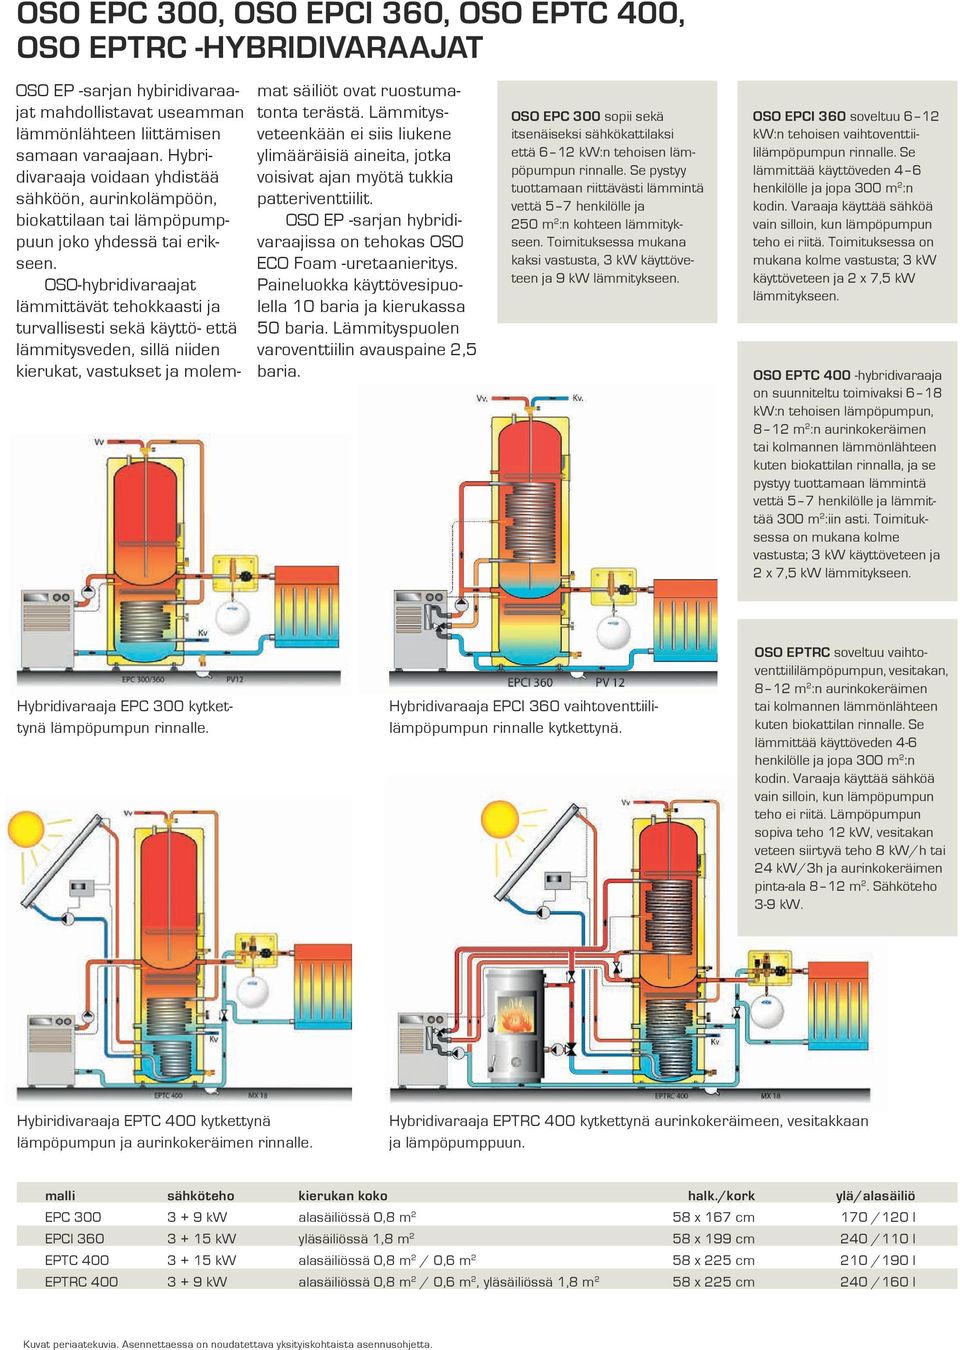 OSO-hybridivaraajat lämmittävät tehokkaasti ja turvallisesti sekä käyttö- että lämmitysveden, sillä niiden kierukat, vastukset ja molemmat säiliöt ovat ruostumatonta terästä.